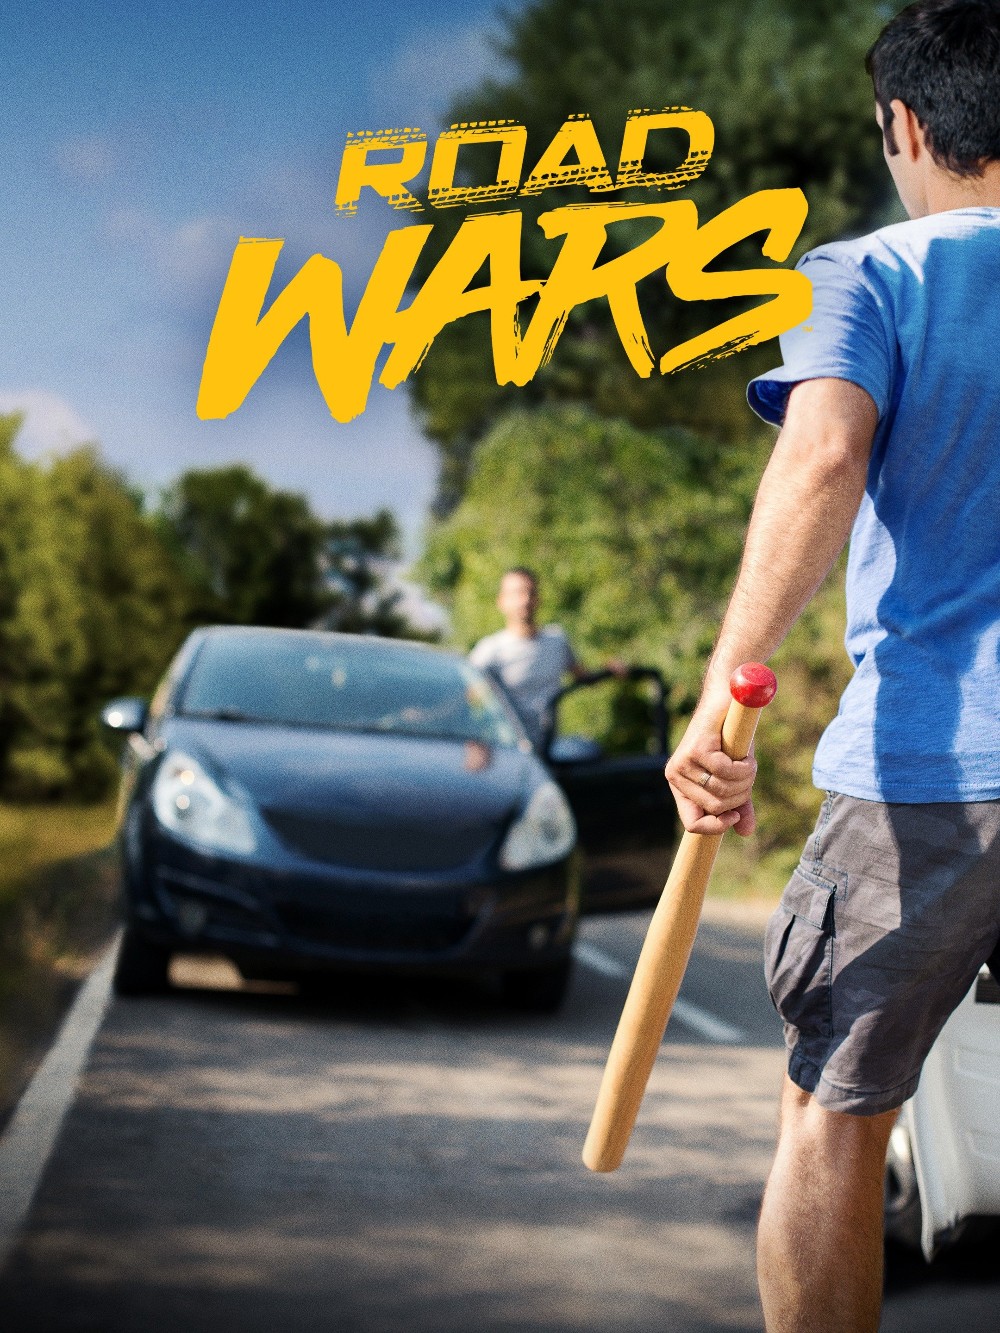 Road Wars 2022 S03E04 [1080p/720p] (x265) 41d8e29c2a7303f573185f9440e93715